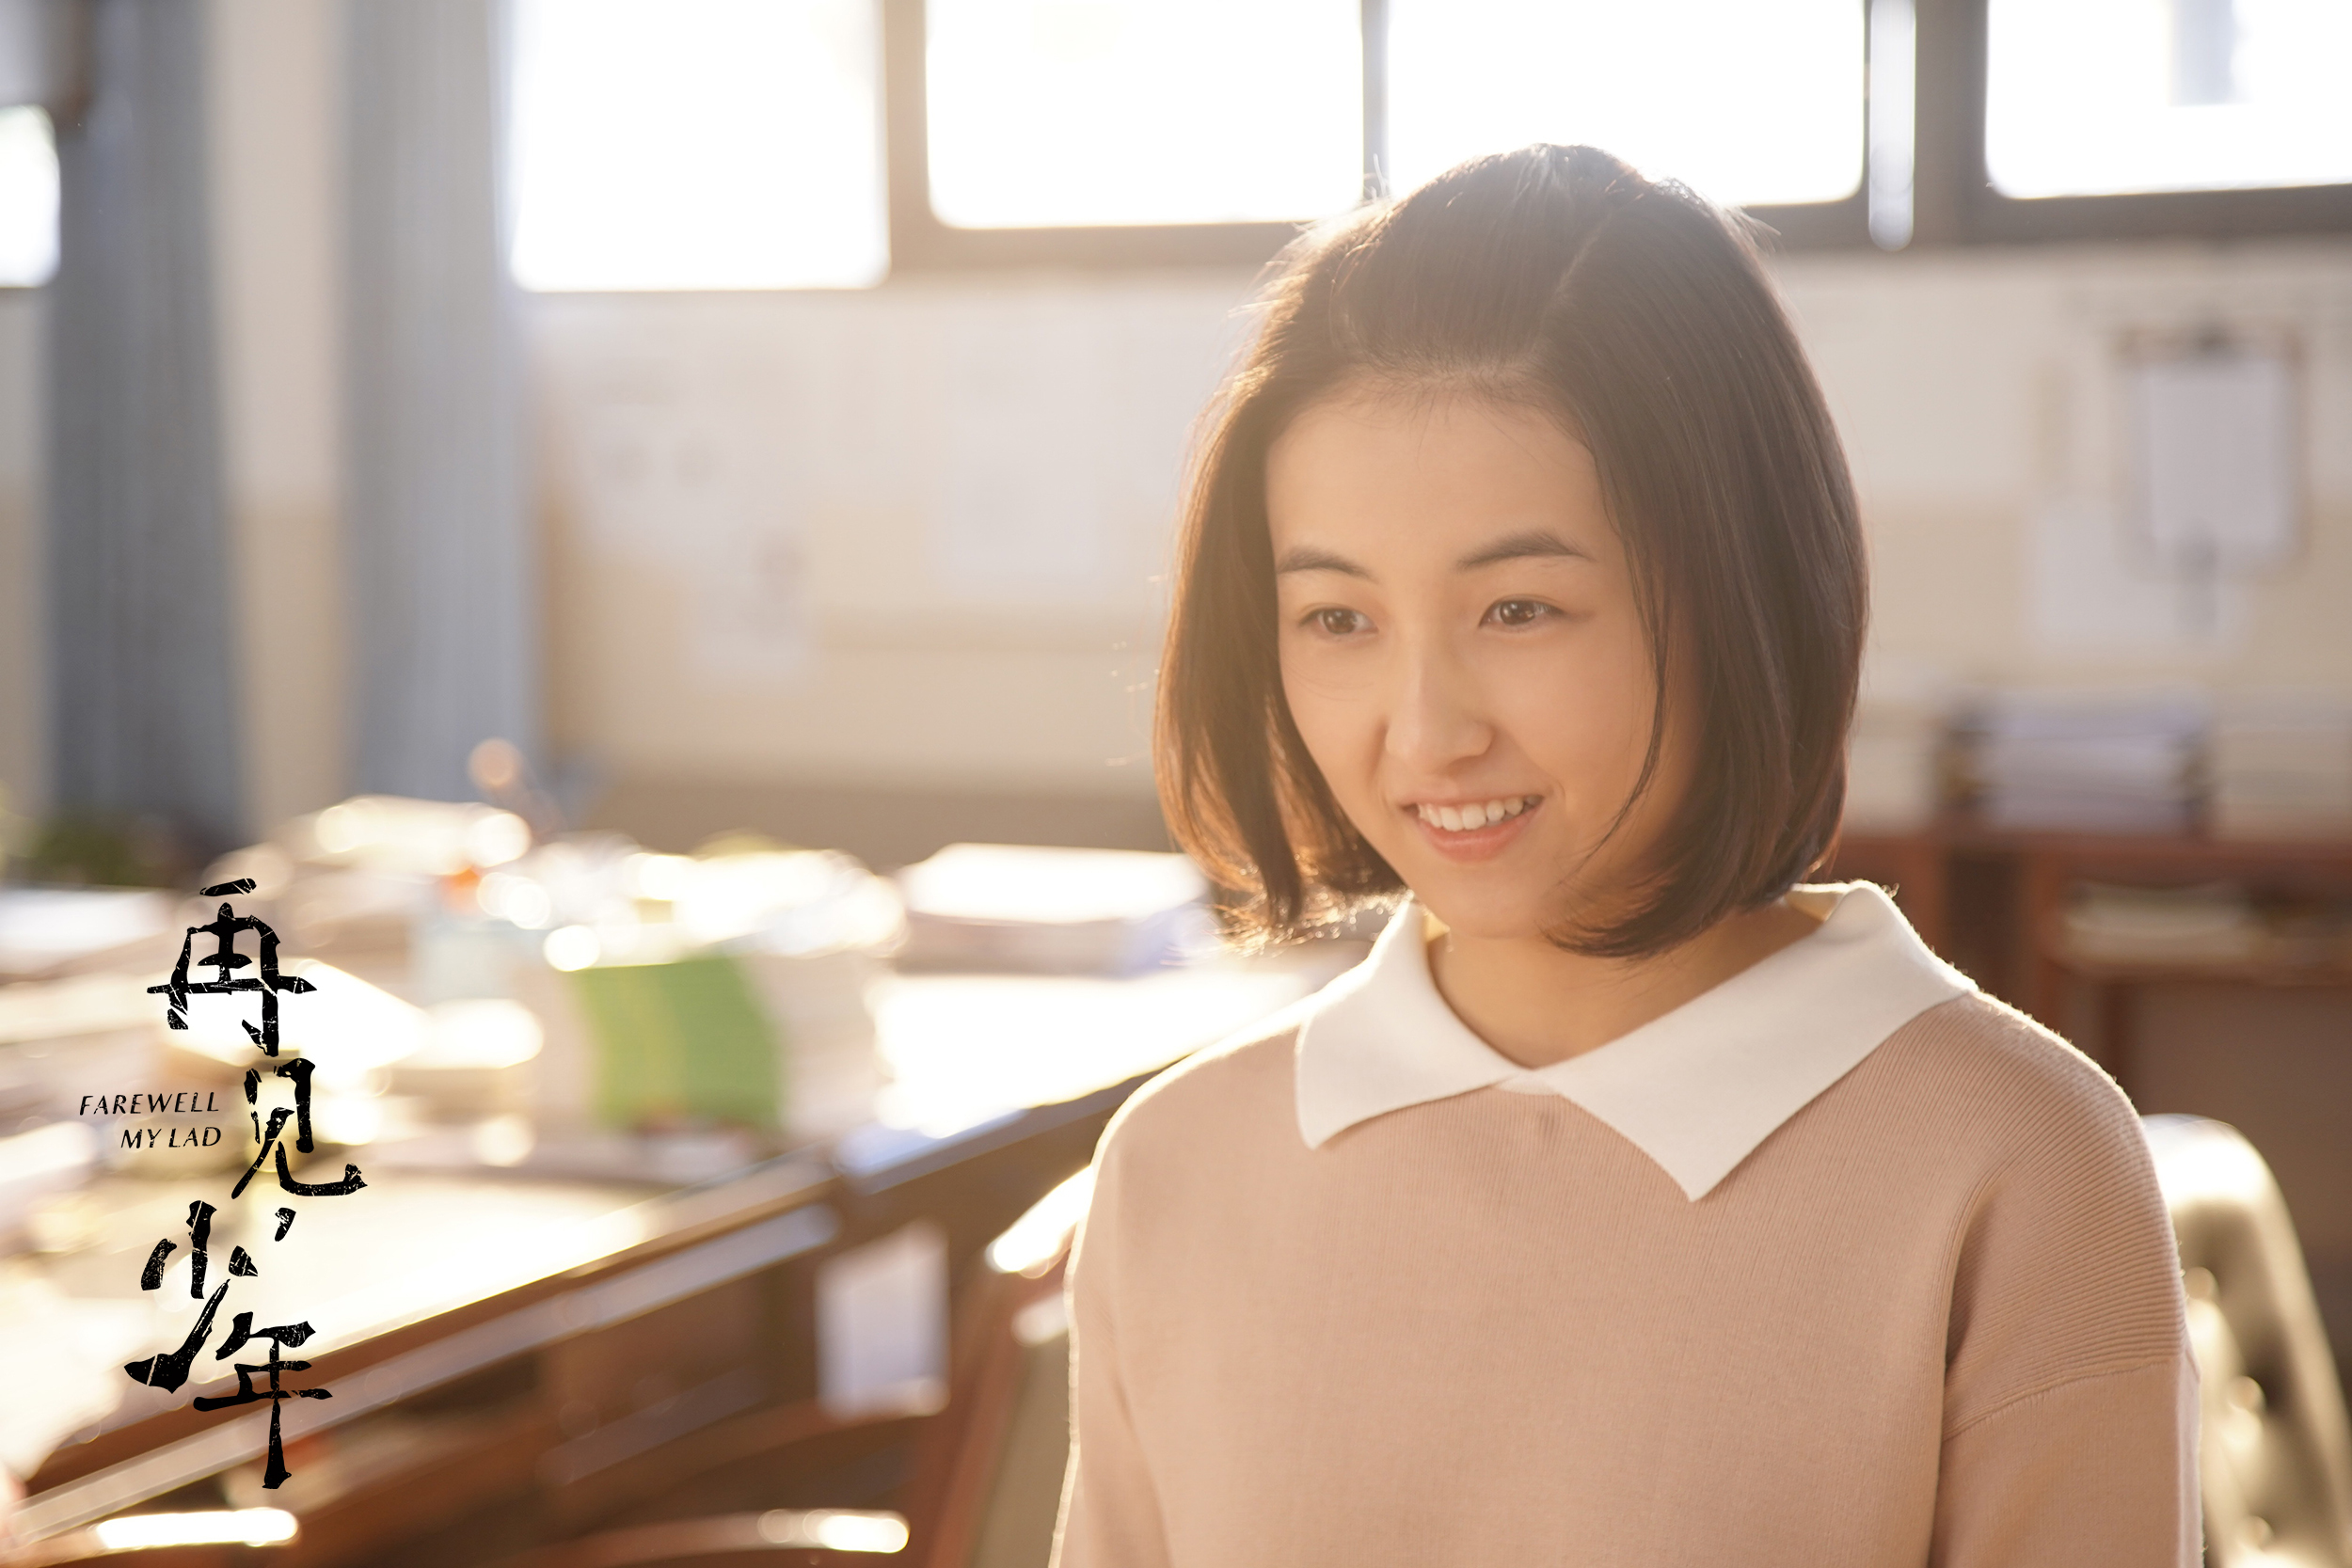 张子枫新片《再见,少年》最新预告曝光 细腻青春成长故事引期待